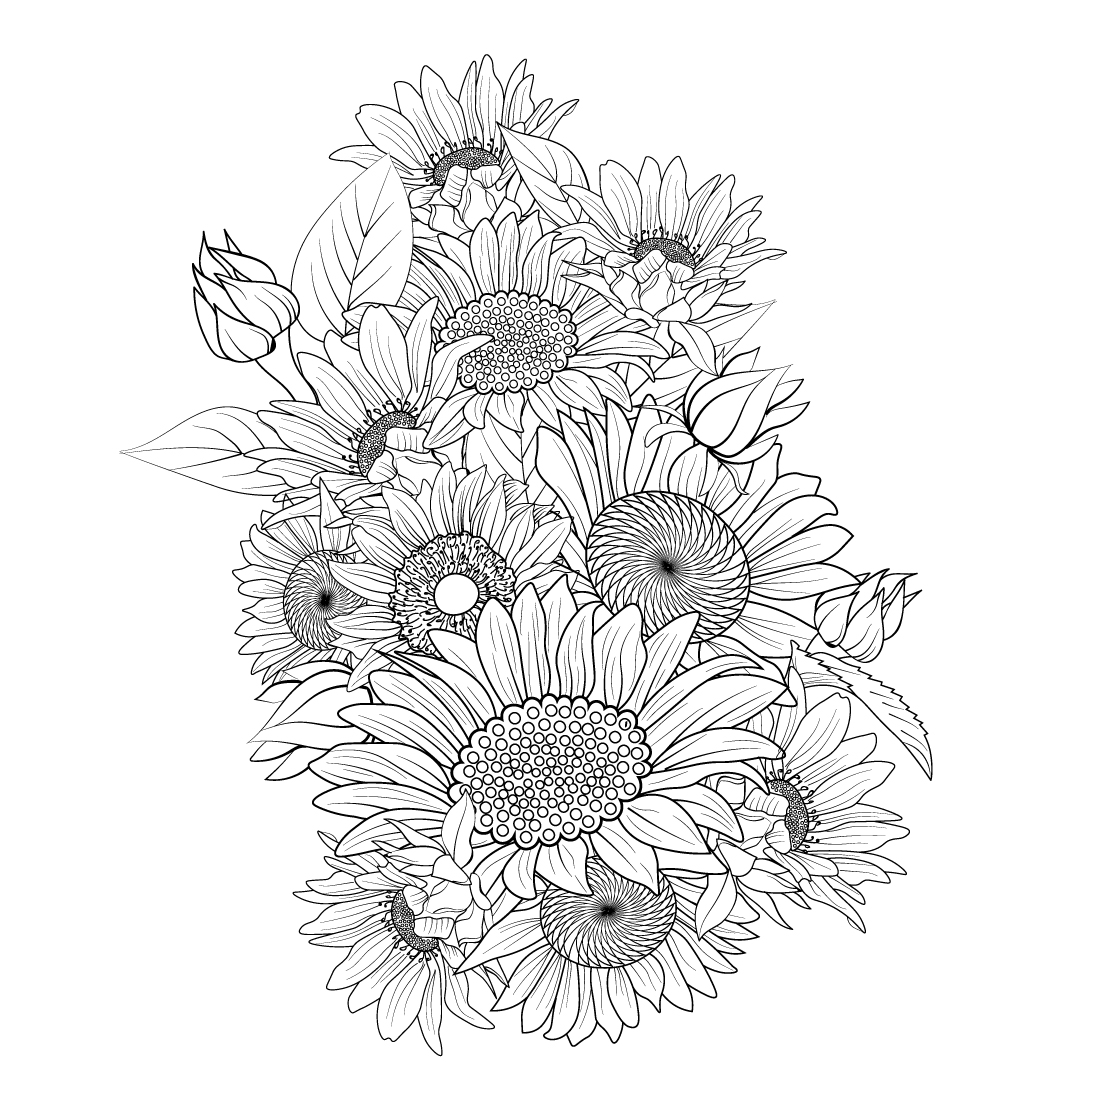 Sunflower tattoo | Sunflower tattoo sleeve, Sunflower tattoo shoulder, Colorful  sunflower tattoo